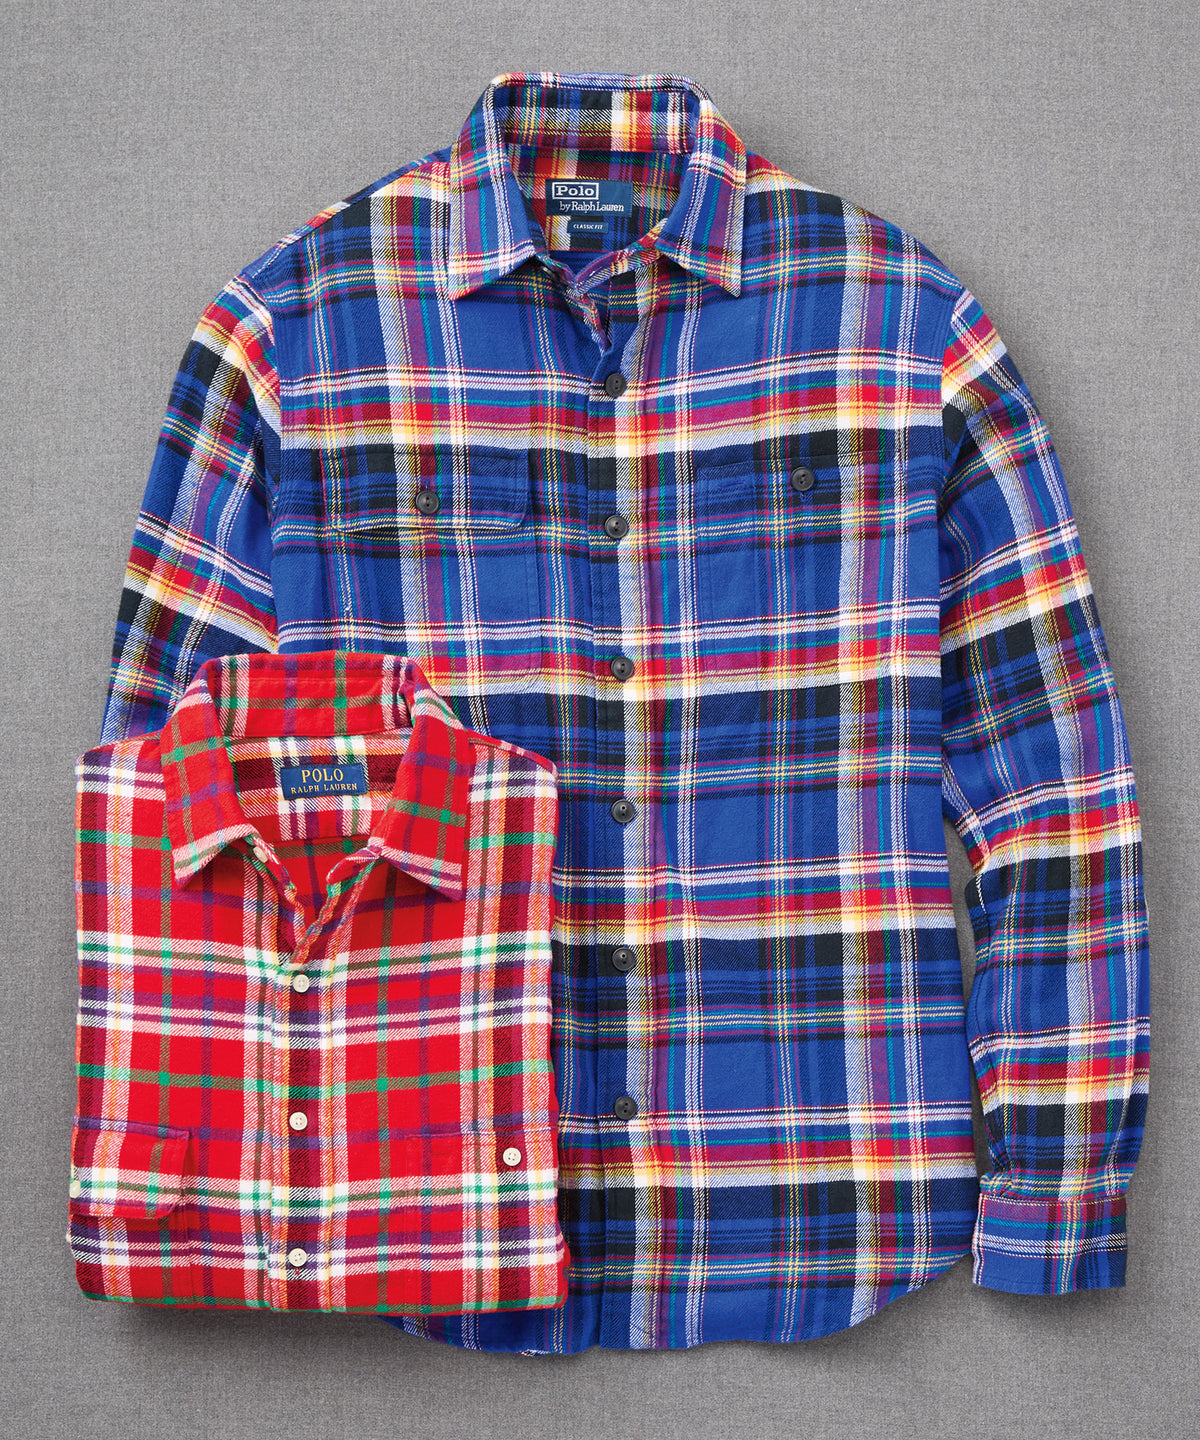 Polo Ralph Lauren Long Sleeve Flannel Sport Shirt, Big & Tall